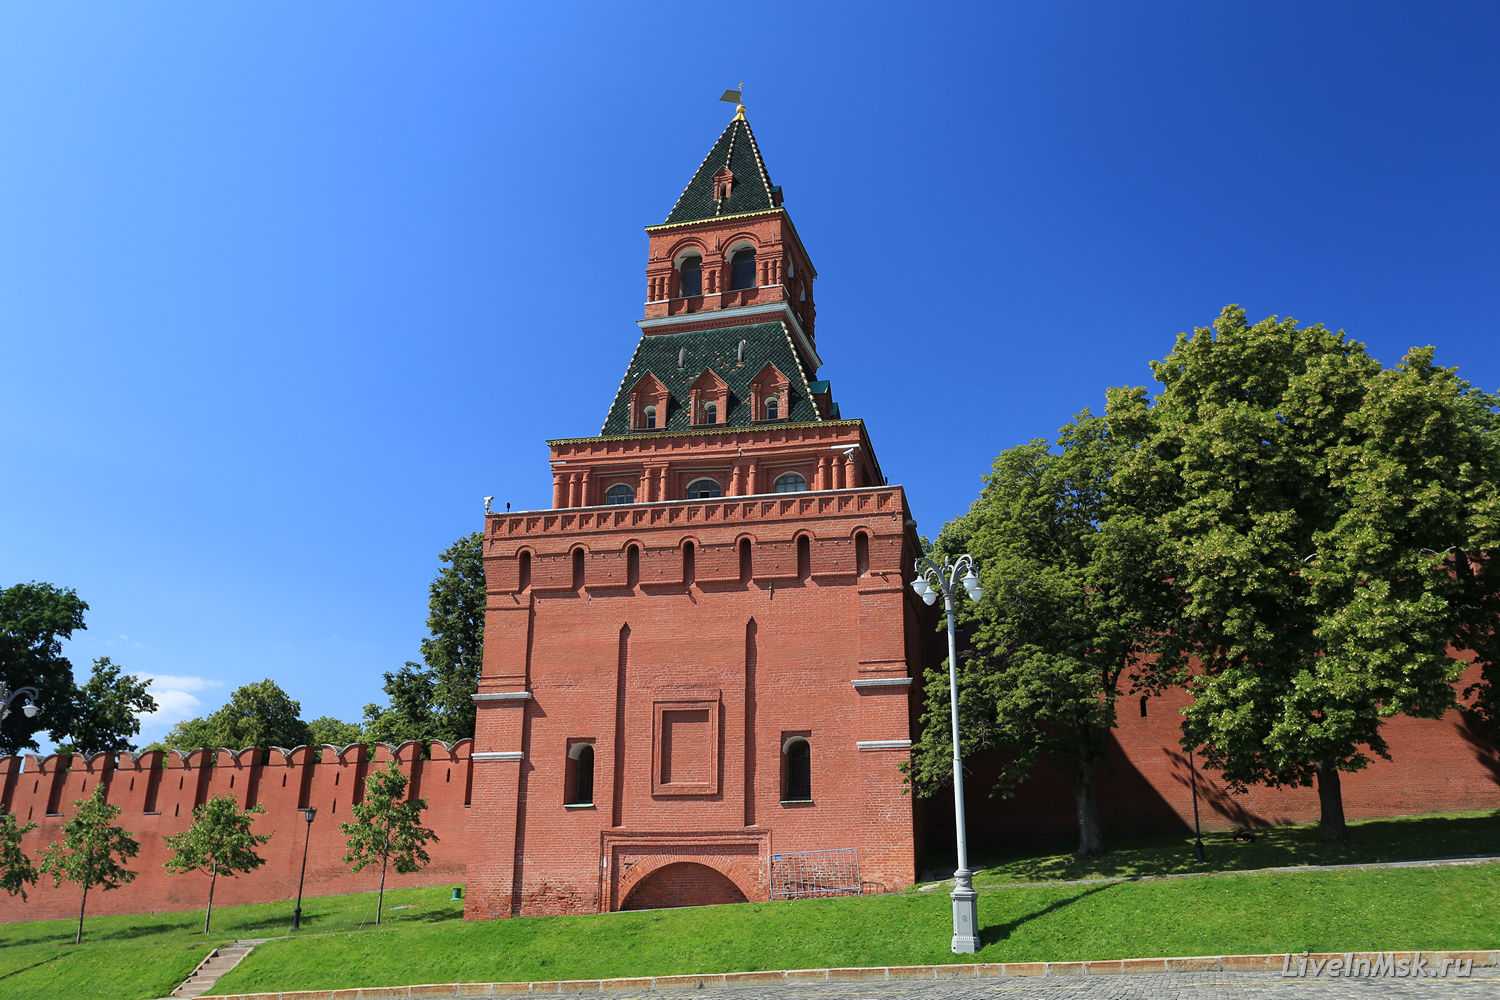 Кремлевские башни названия и фото по порядку